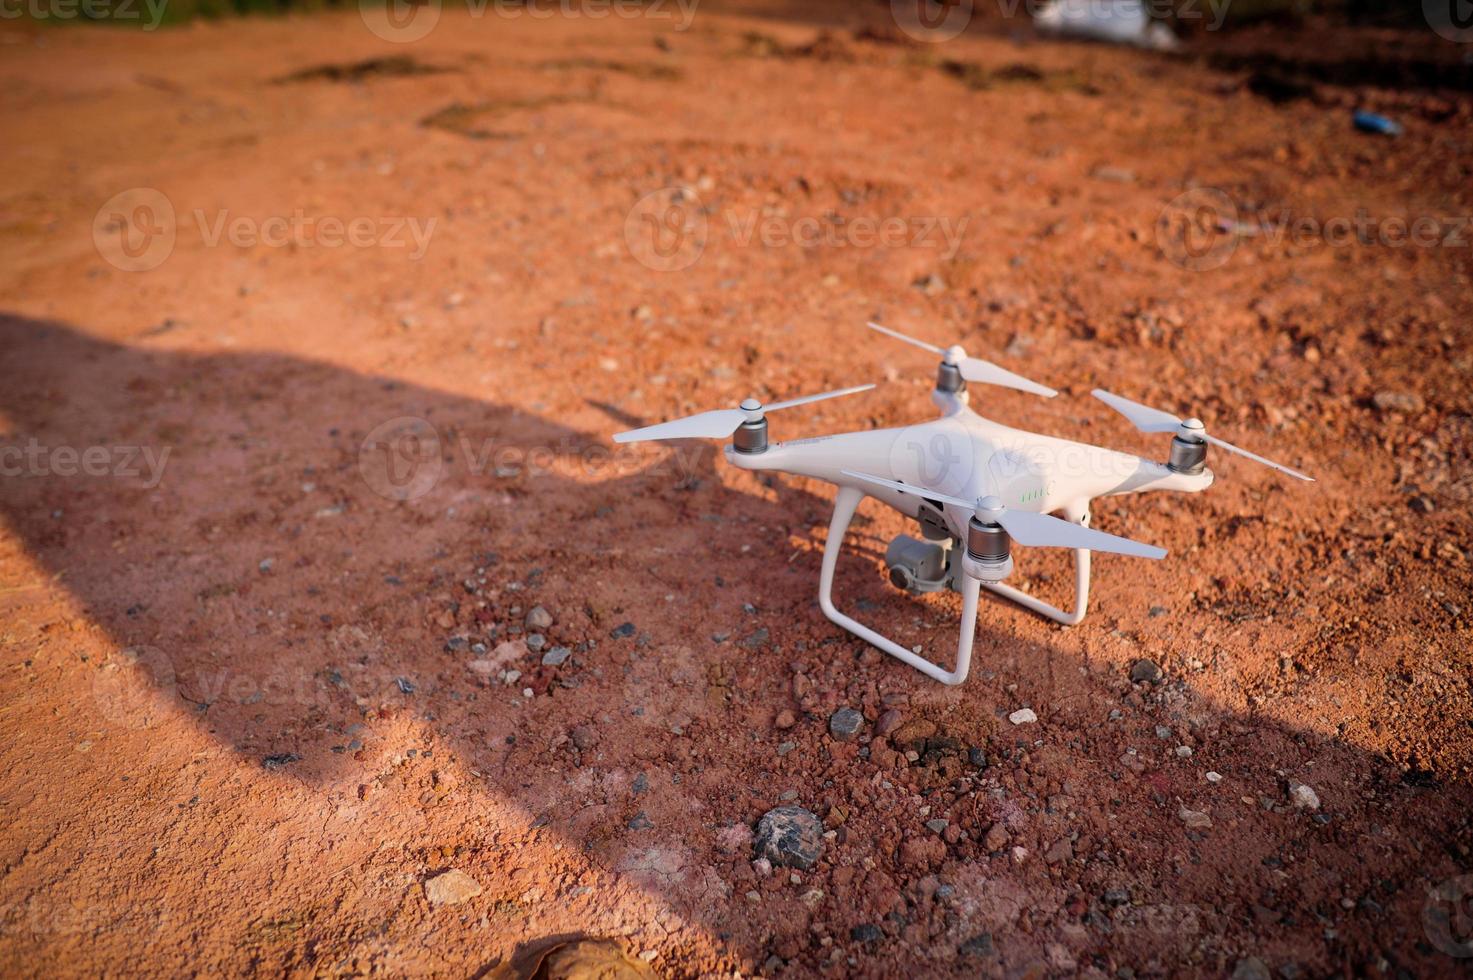 drones photo photographie d'aviation miniature pour le divertissement